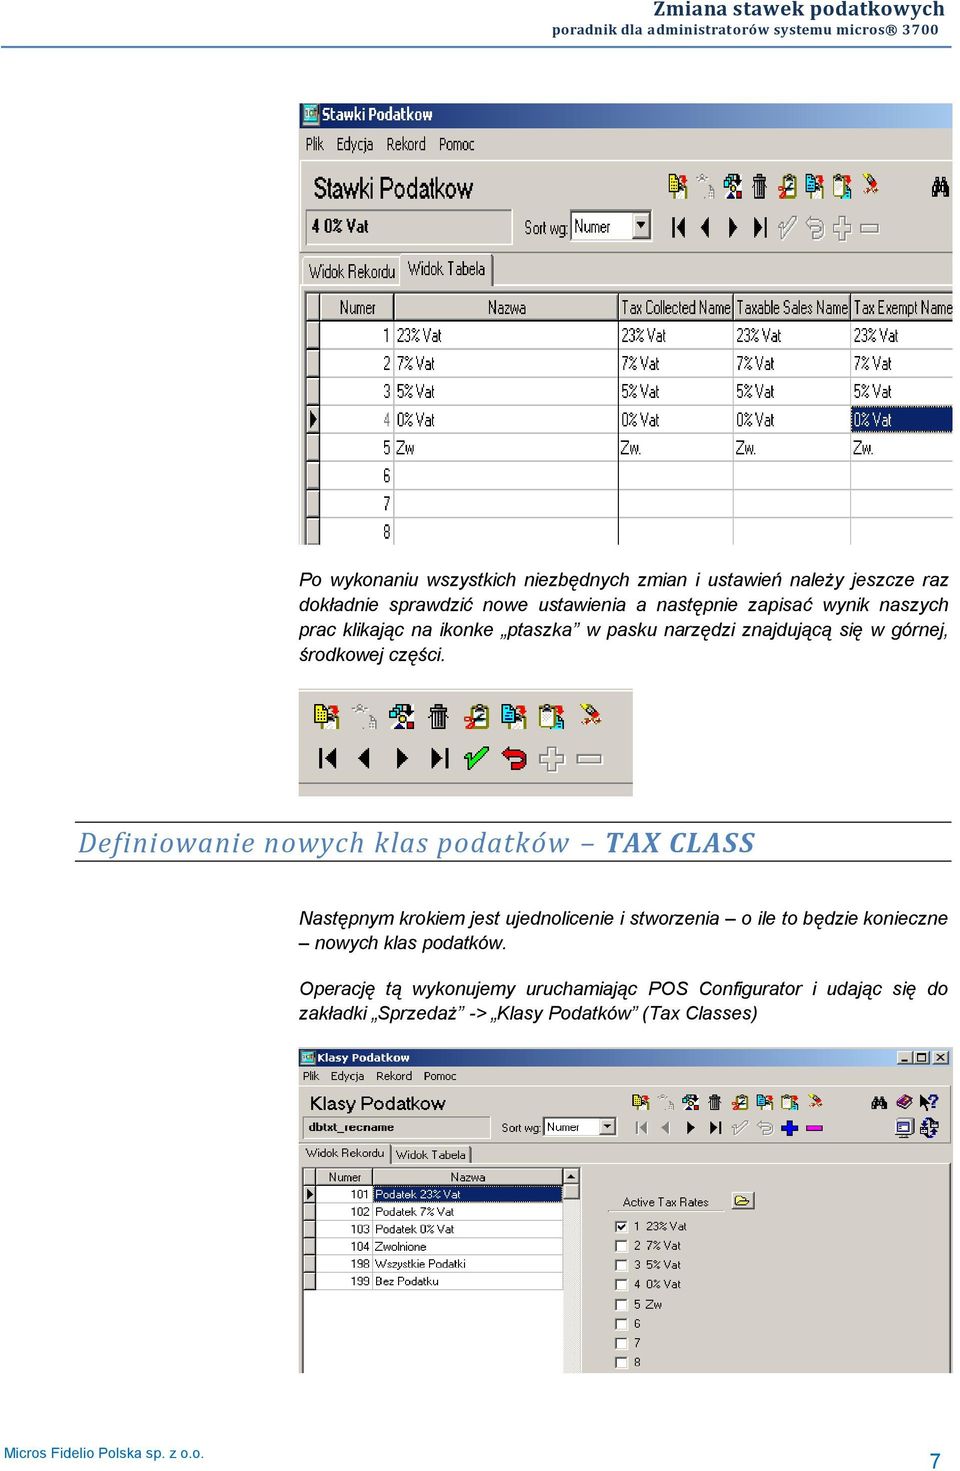 Definiowanie nowych klas podatków TAX CLASS Następnym krokiem jest ujednolicenie i stworzenia o ile to będzie konieczne nowych klas podatków.